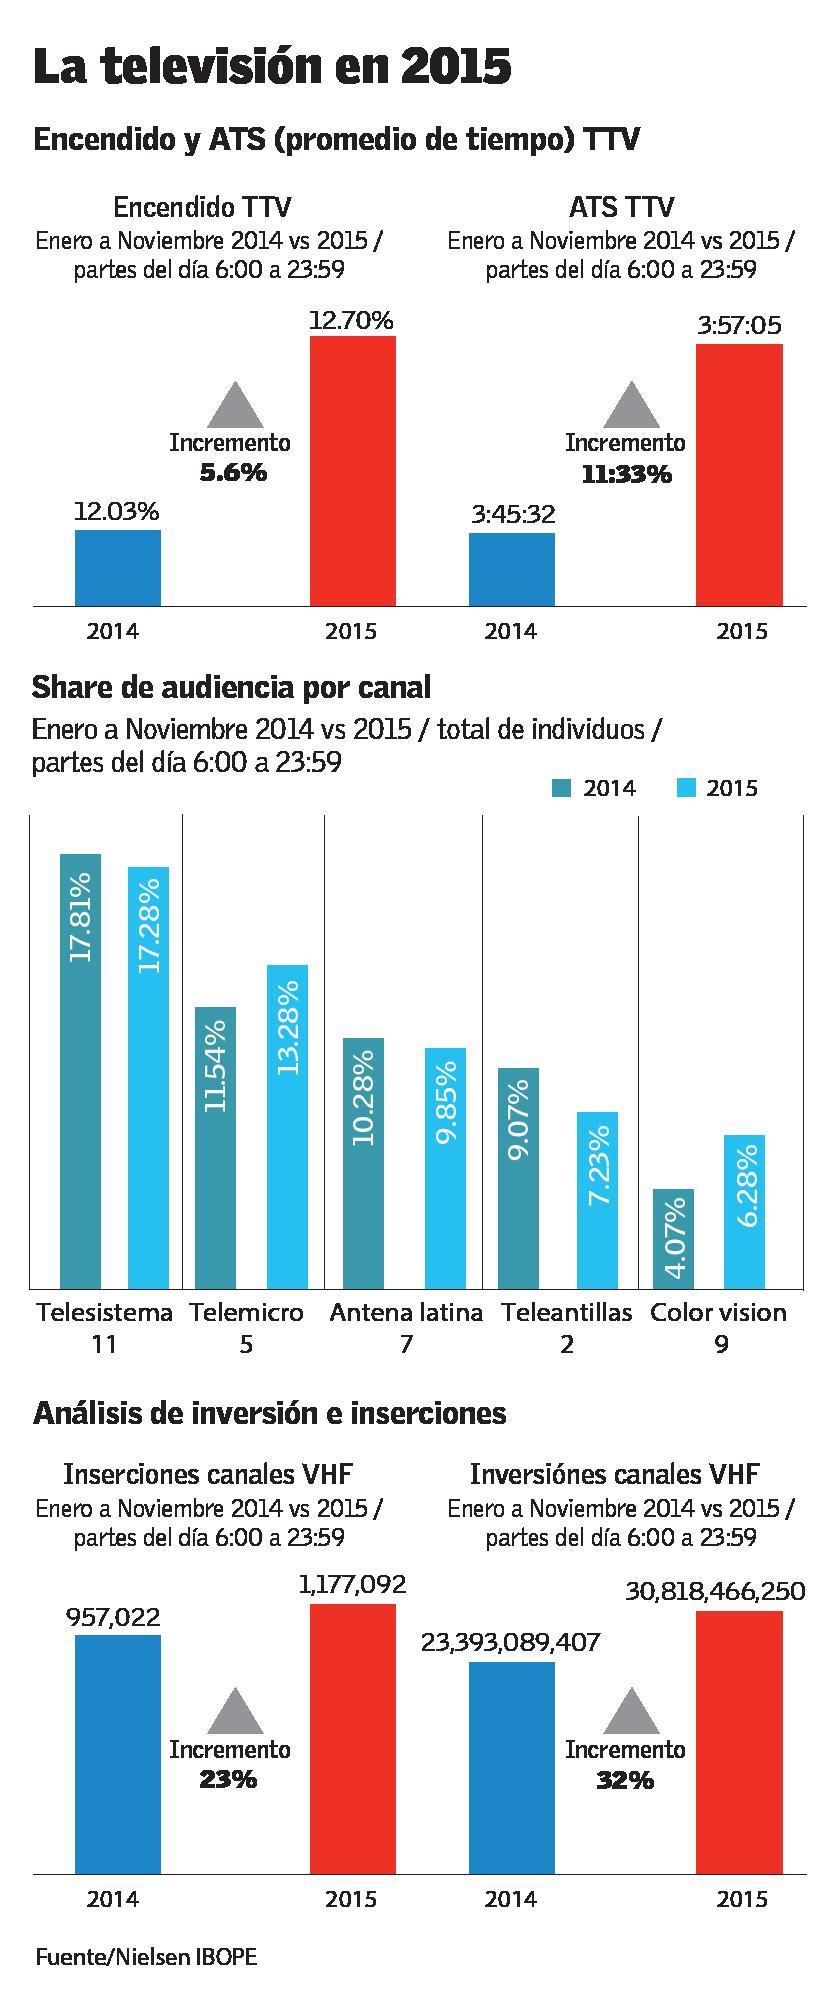 Telemicro y Color Visión lideraron el crecimiento en la televisión nacional en 2015